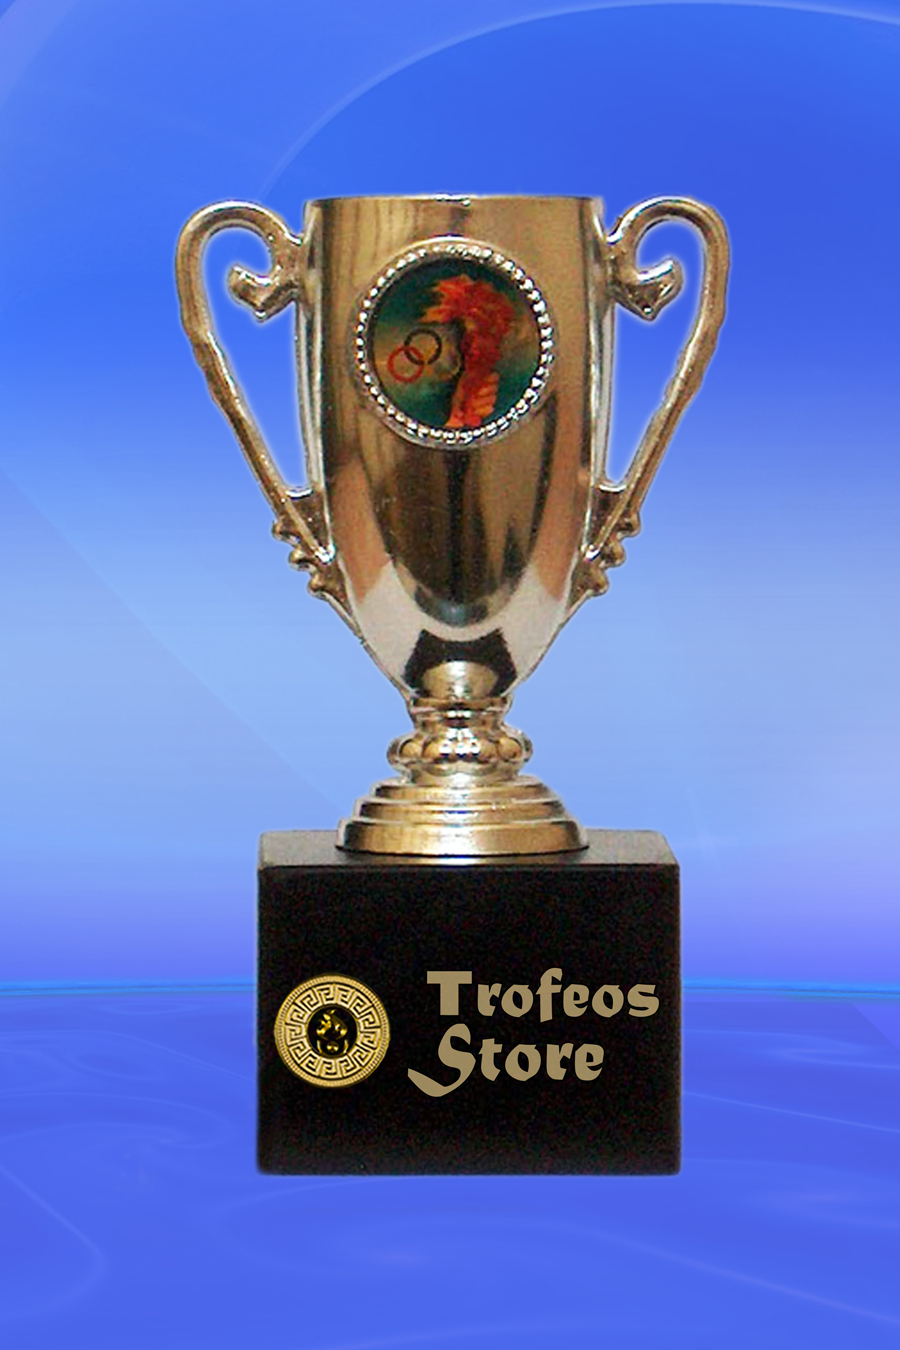 trofeos y medallas en Cali - Trofeos store